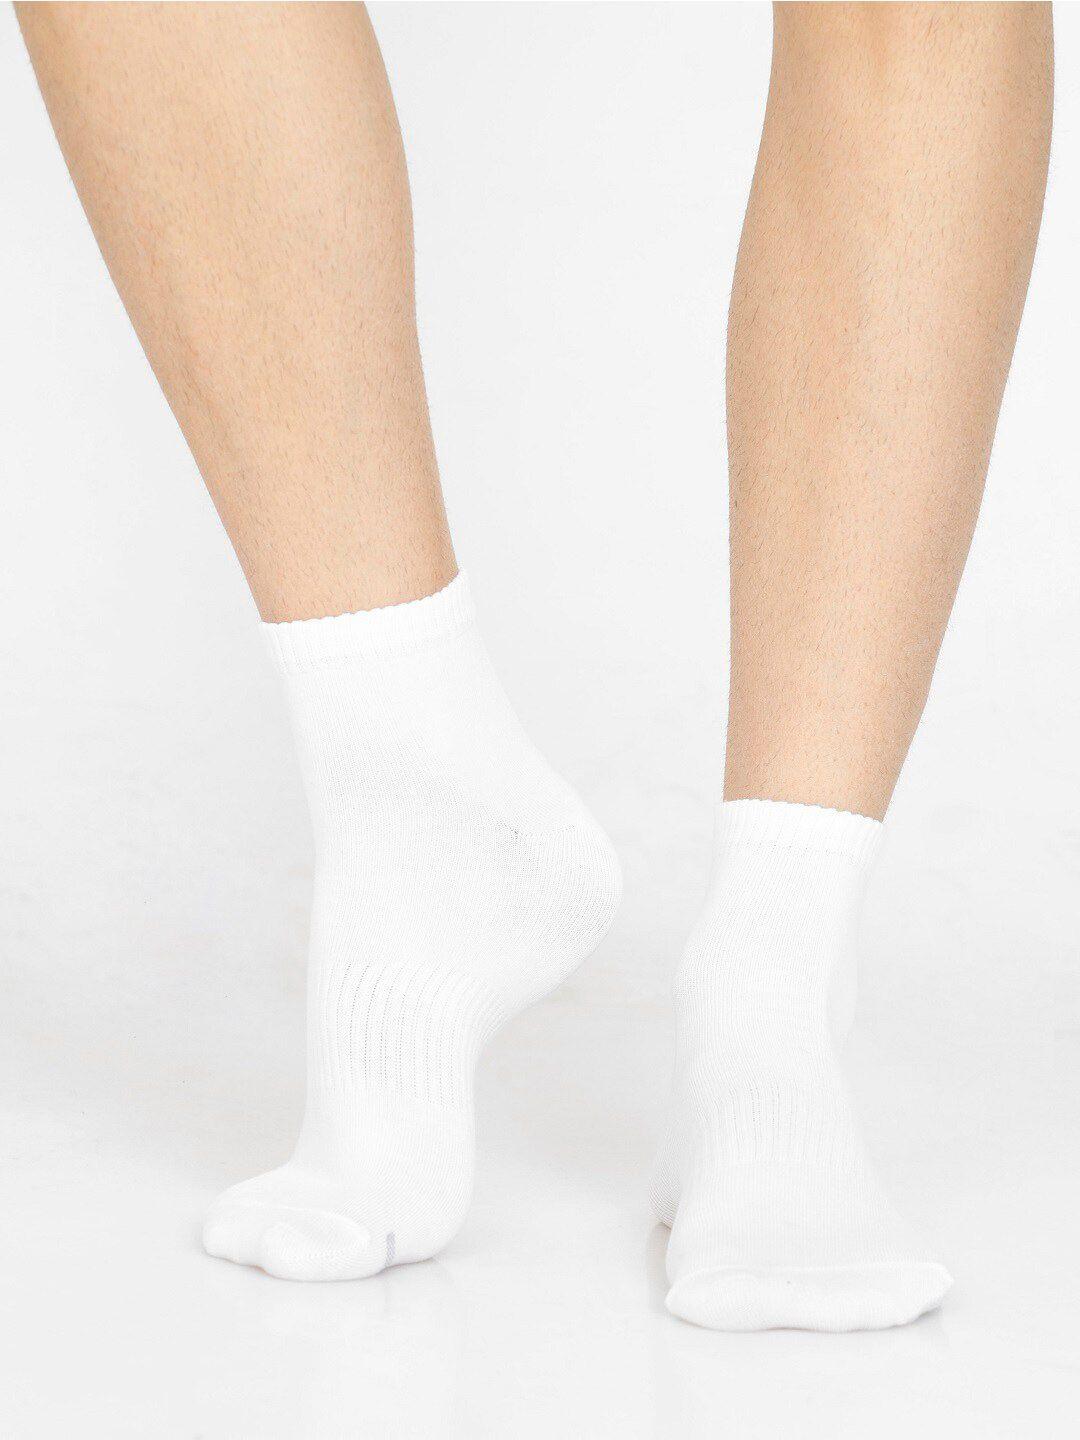 jockey-men-white-solid-above-ankle-length-socks